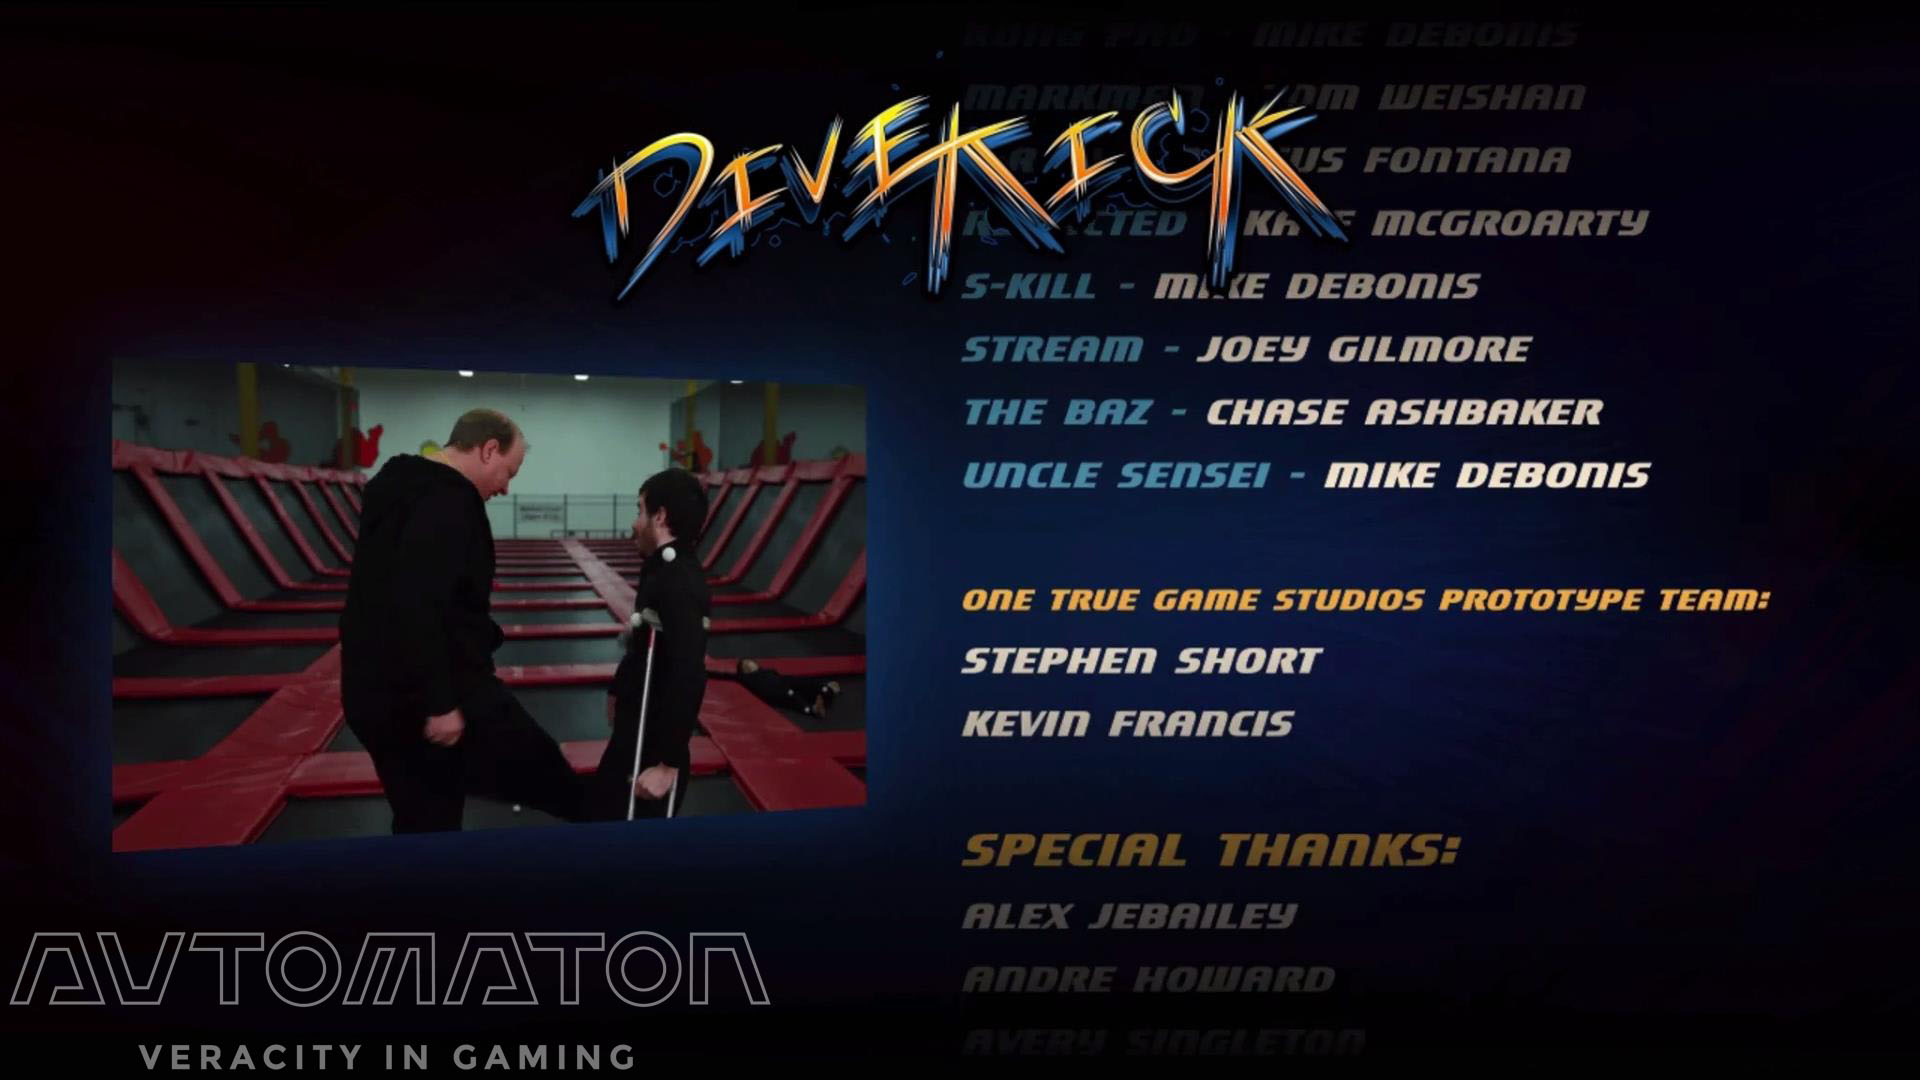 スタッフロールに発売前プロモーションビデオのNGシーンが流れる。ほかキャラクターのバックグラウンドを補完するなど、さらなるプレイ意欲を引き出すやりようはあった。